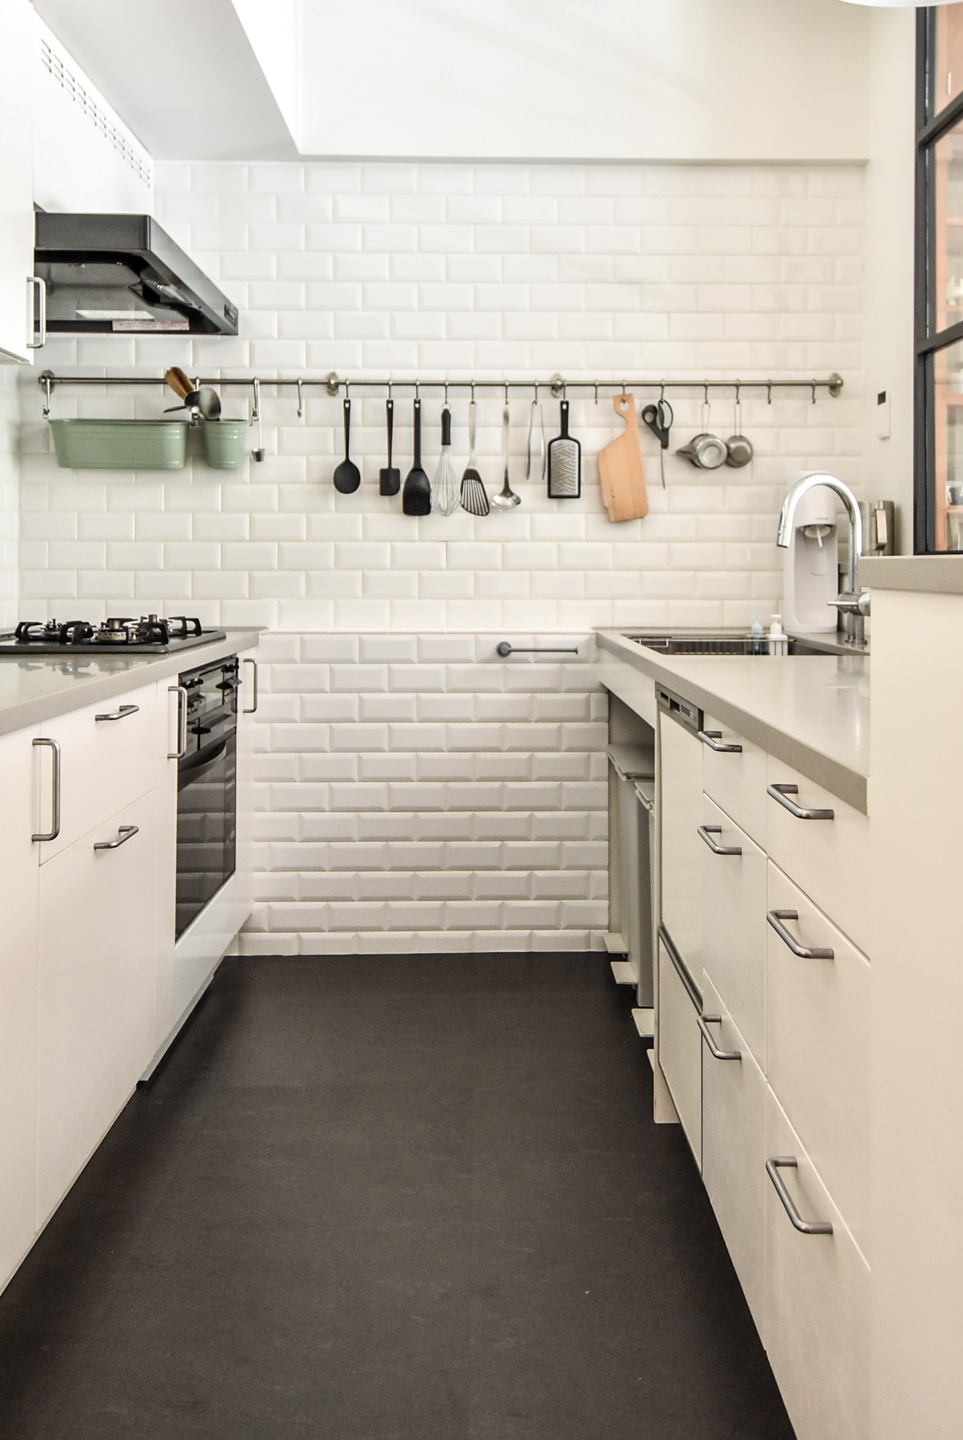 モダンで明るいキッチン、白いタイルの壁、ステンレス製の調理器具が並ぶ。シンプルで機能的なデザインが特徴。